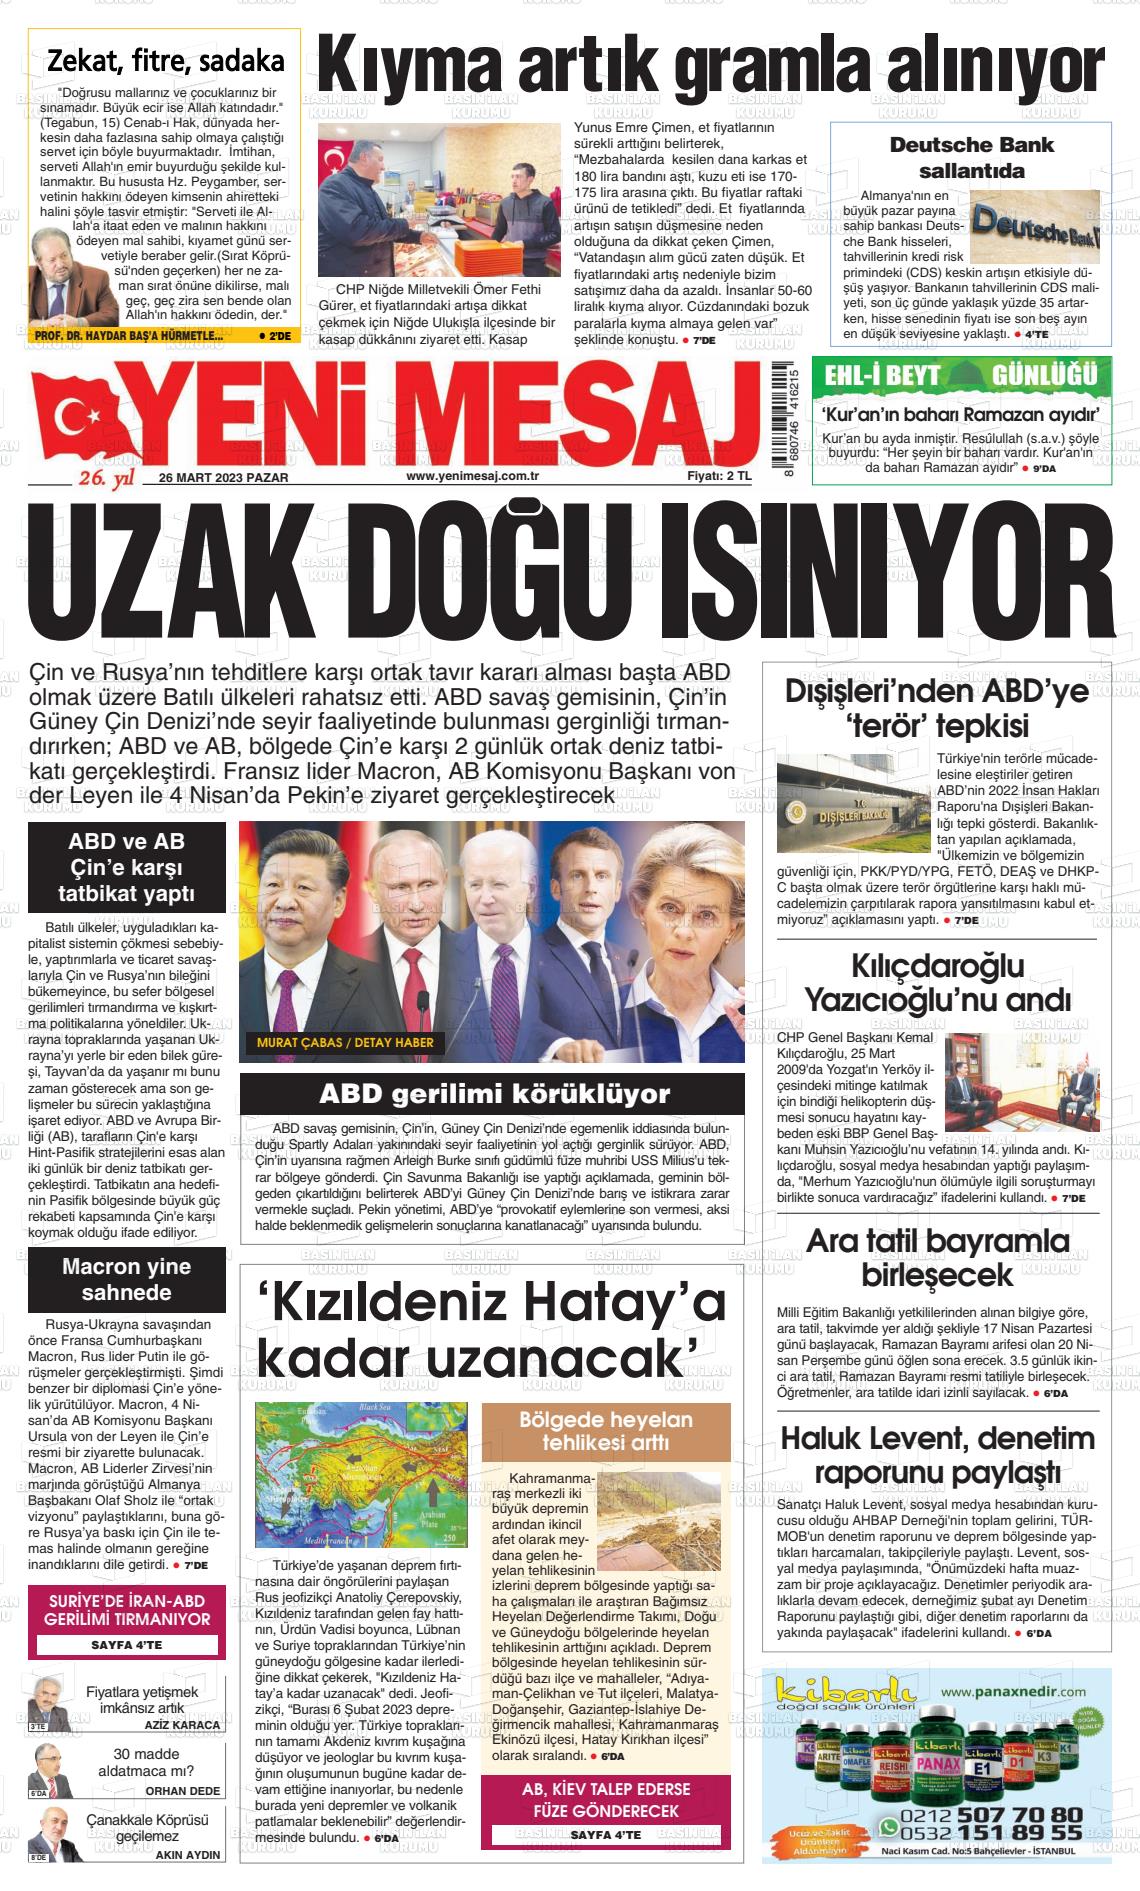 26 Mart 2023 Yeni Mesaj Gazete Manşeti